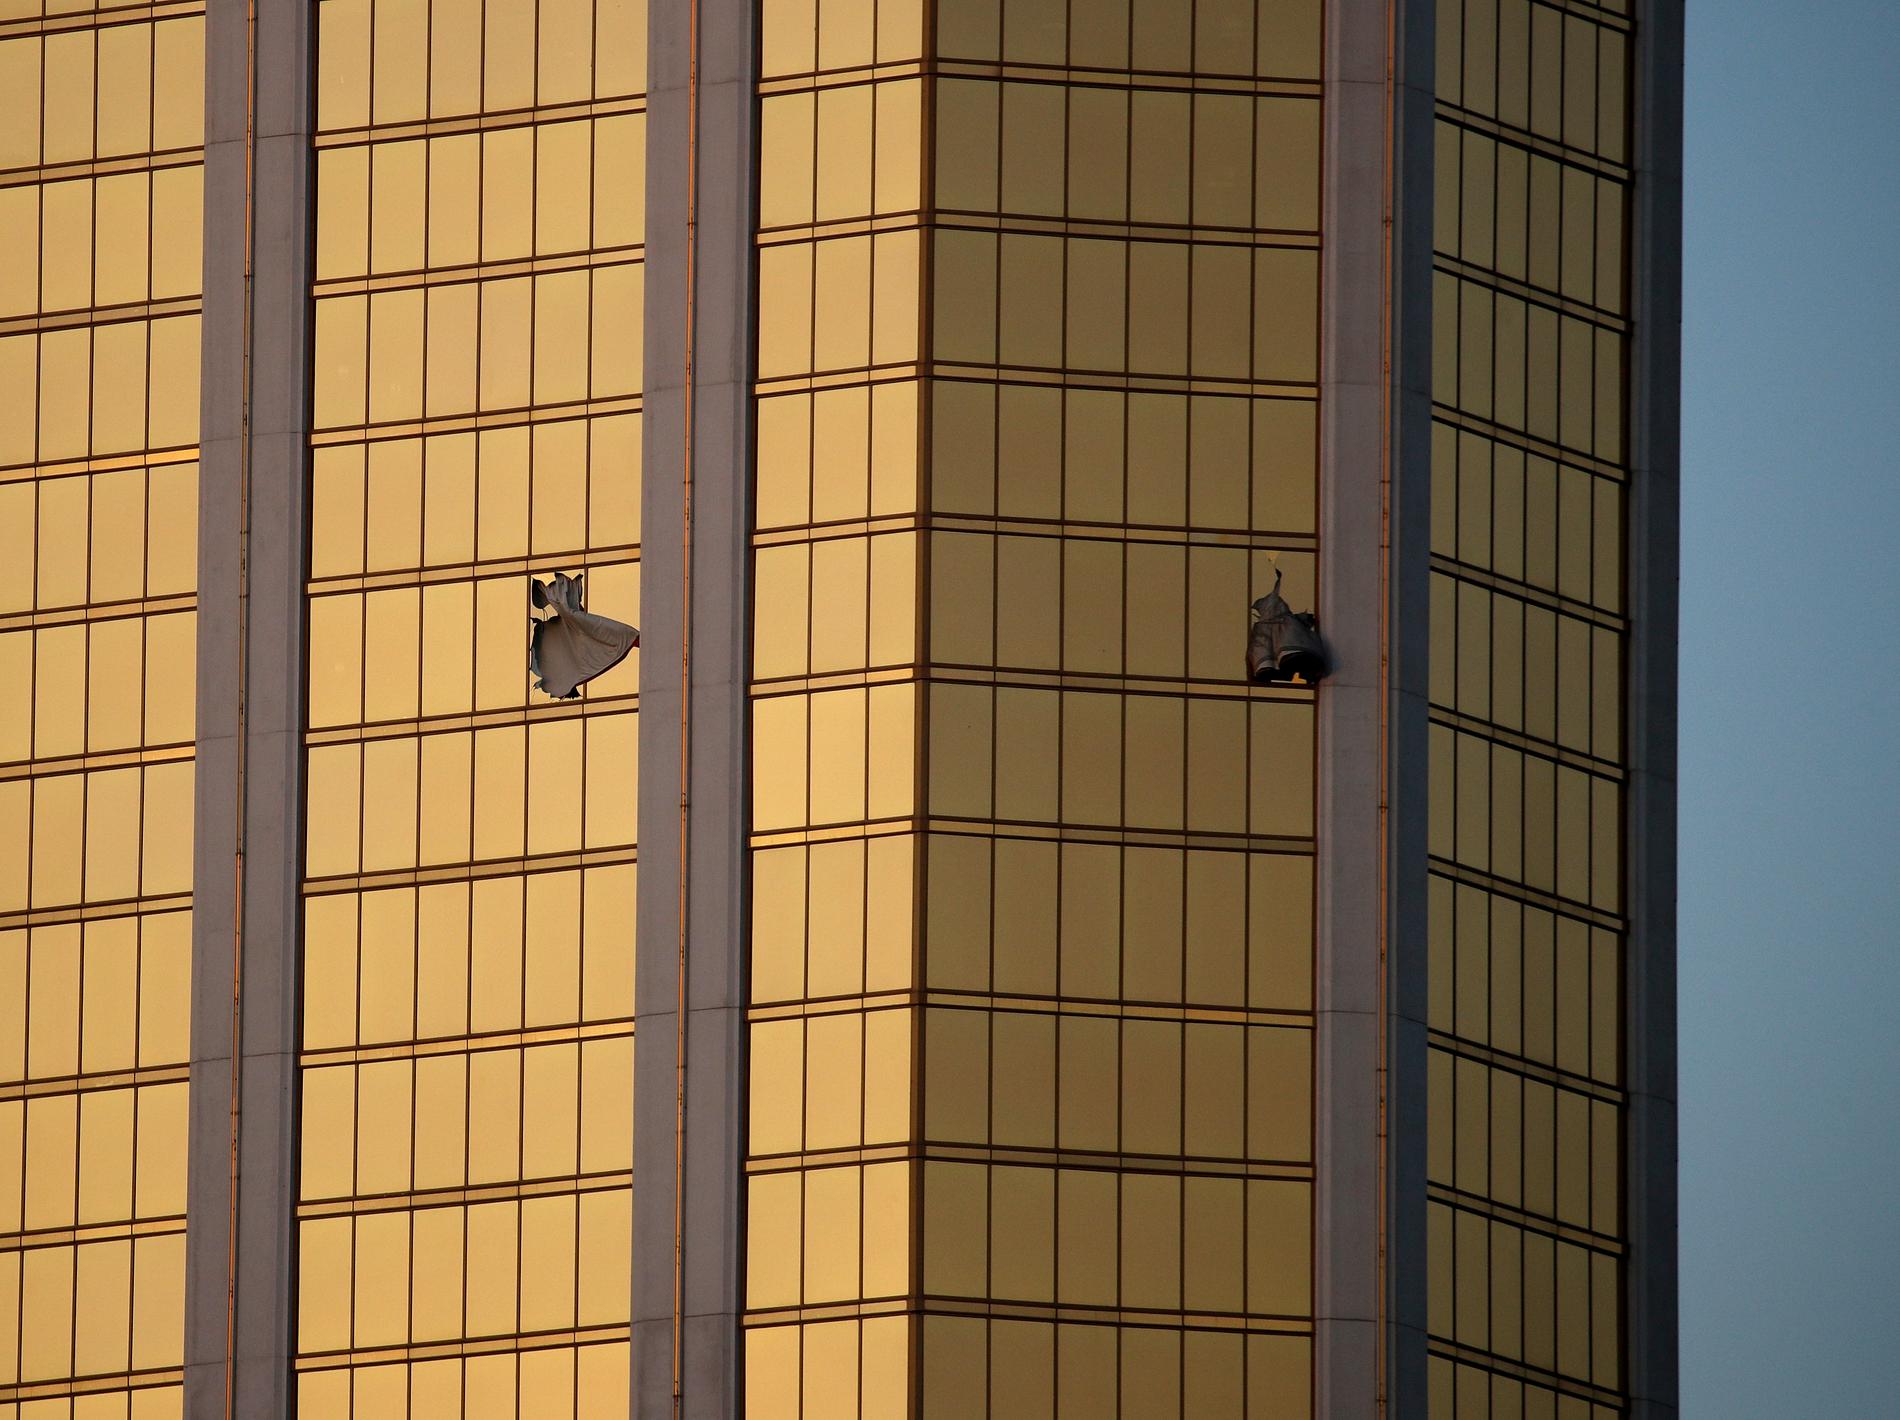 Paddock ska ha krossat ett fönster på hotellet 32:a våning innan han började skjuta.